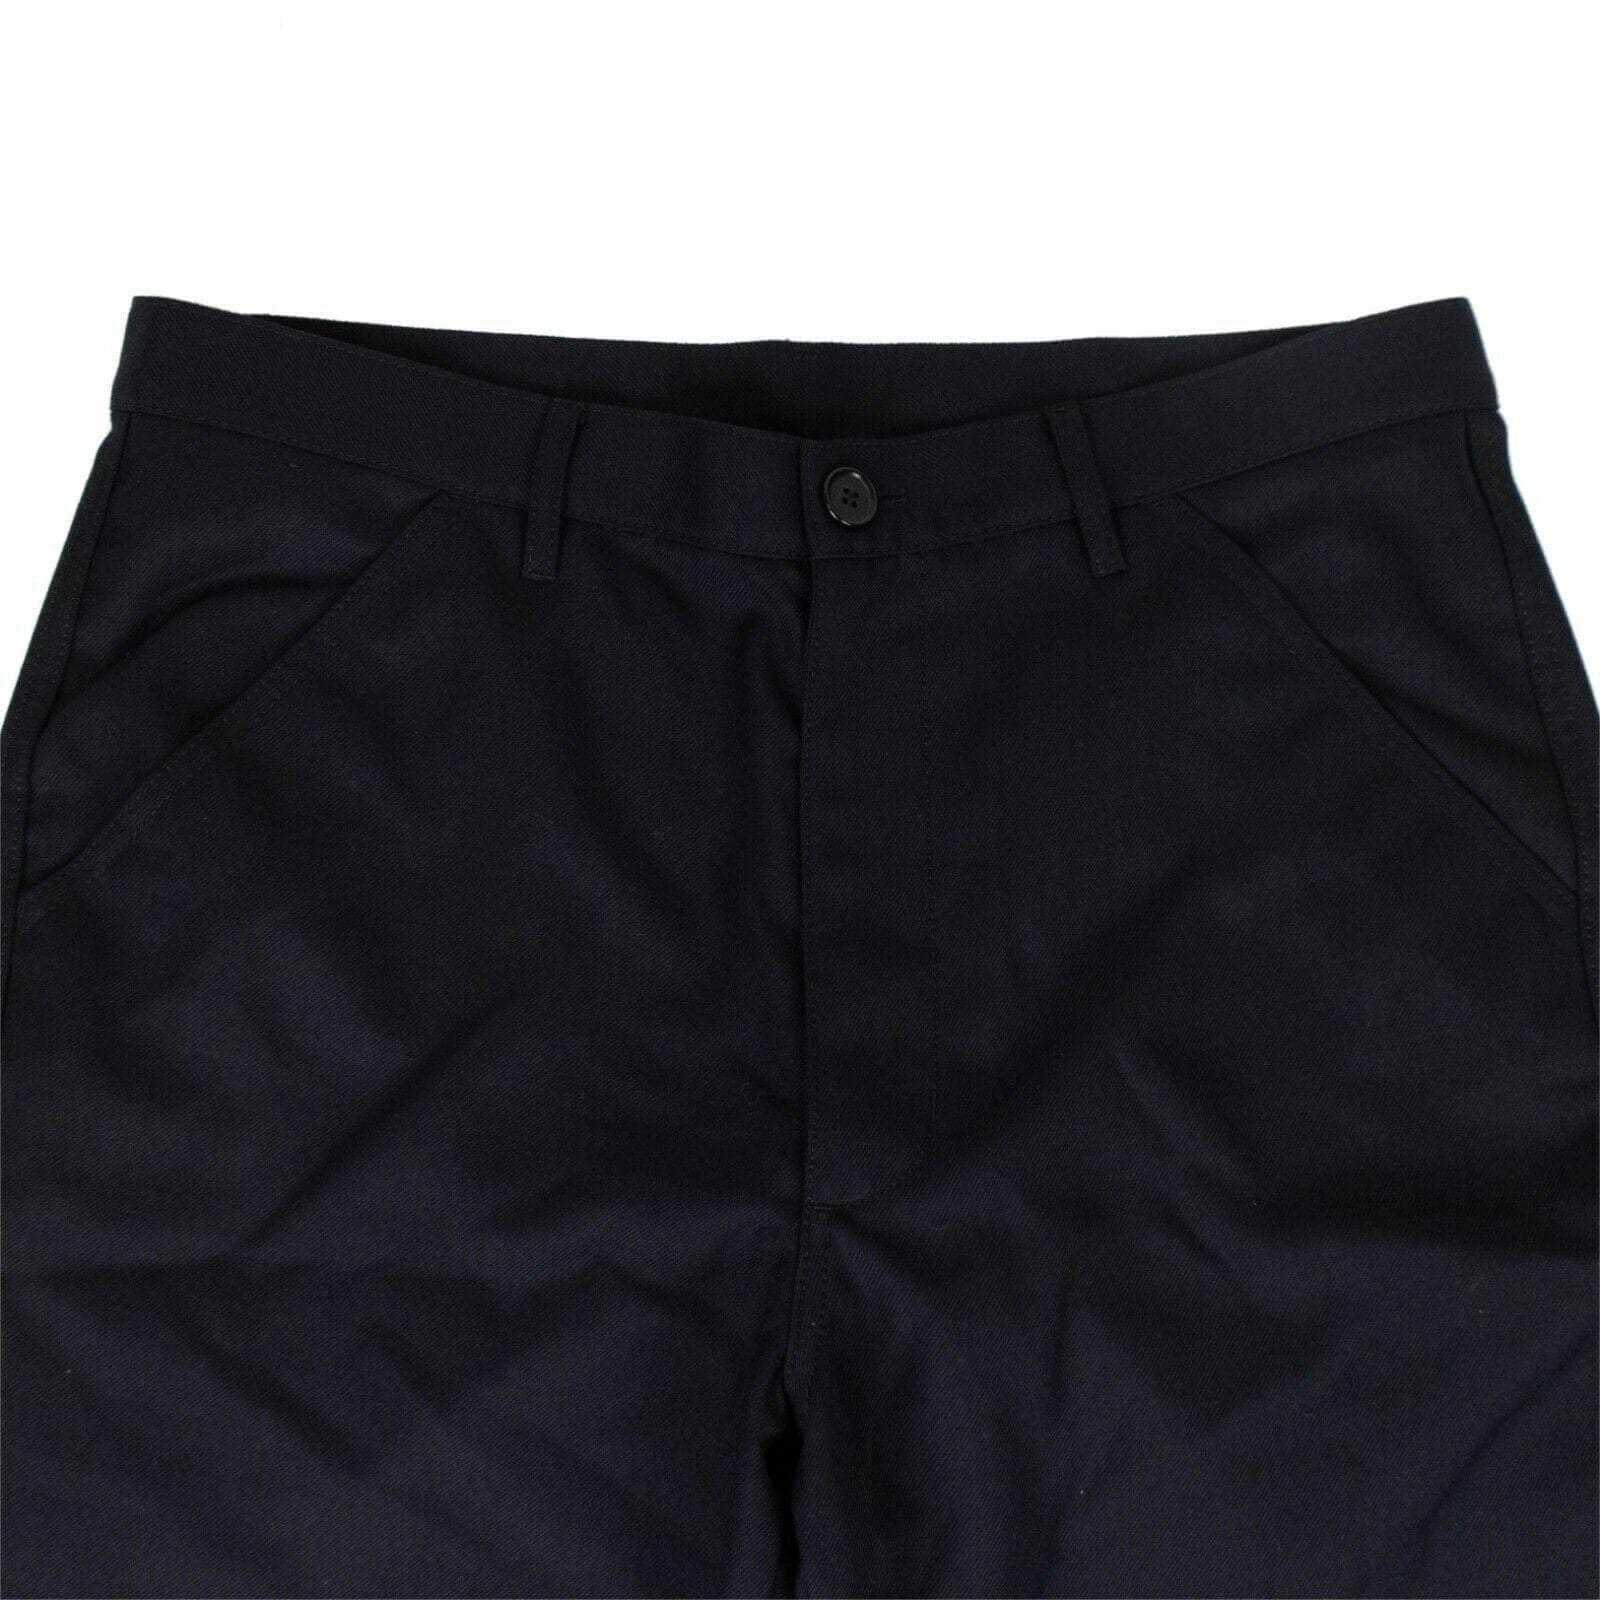 CDG SHIRT BOYS Men's Pants XL / S27937 Polyester Pants - Navy 80ST-CDG-1000/XL 80ST-CDG-1000/XL